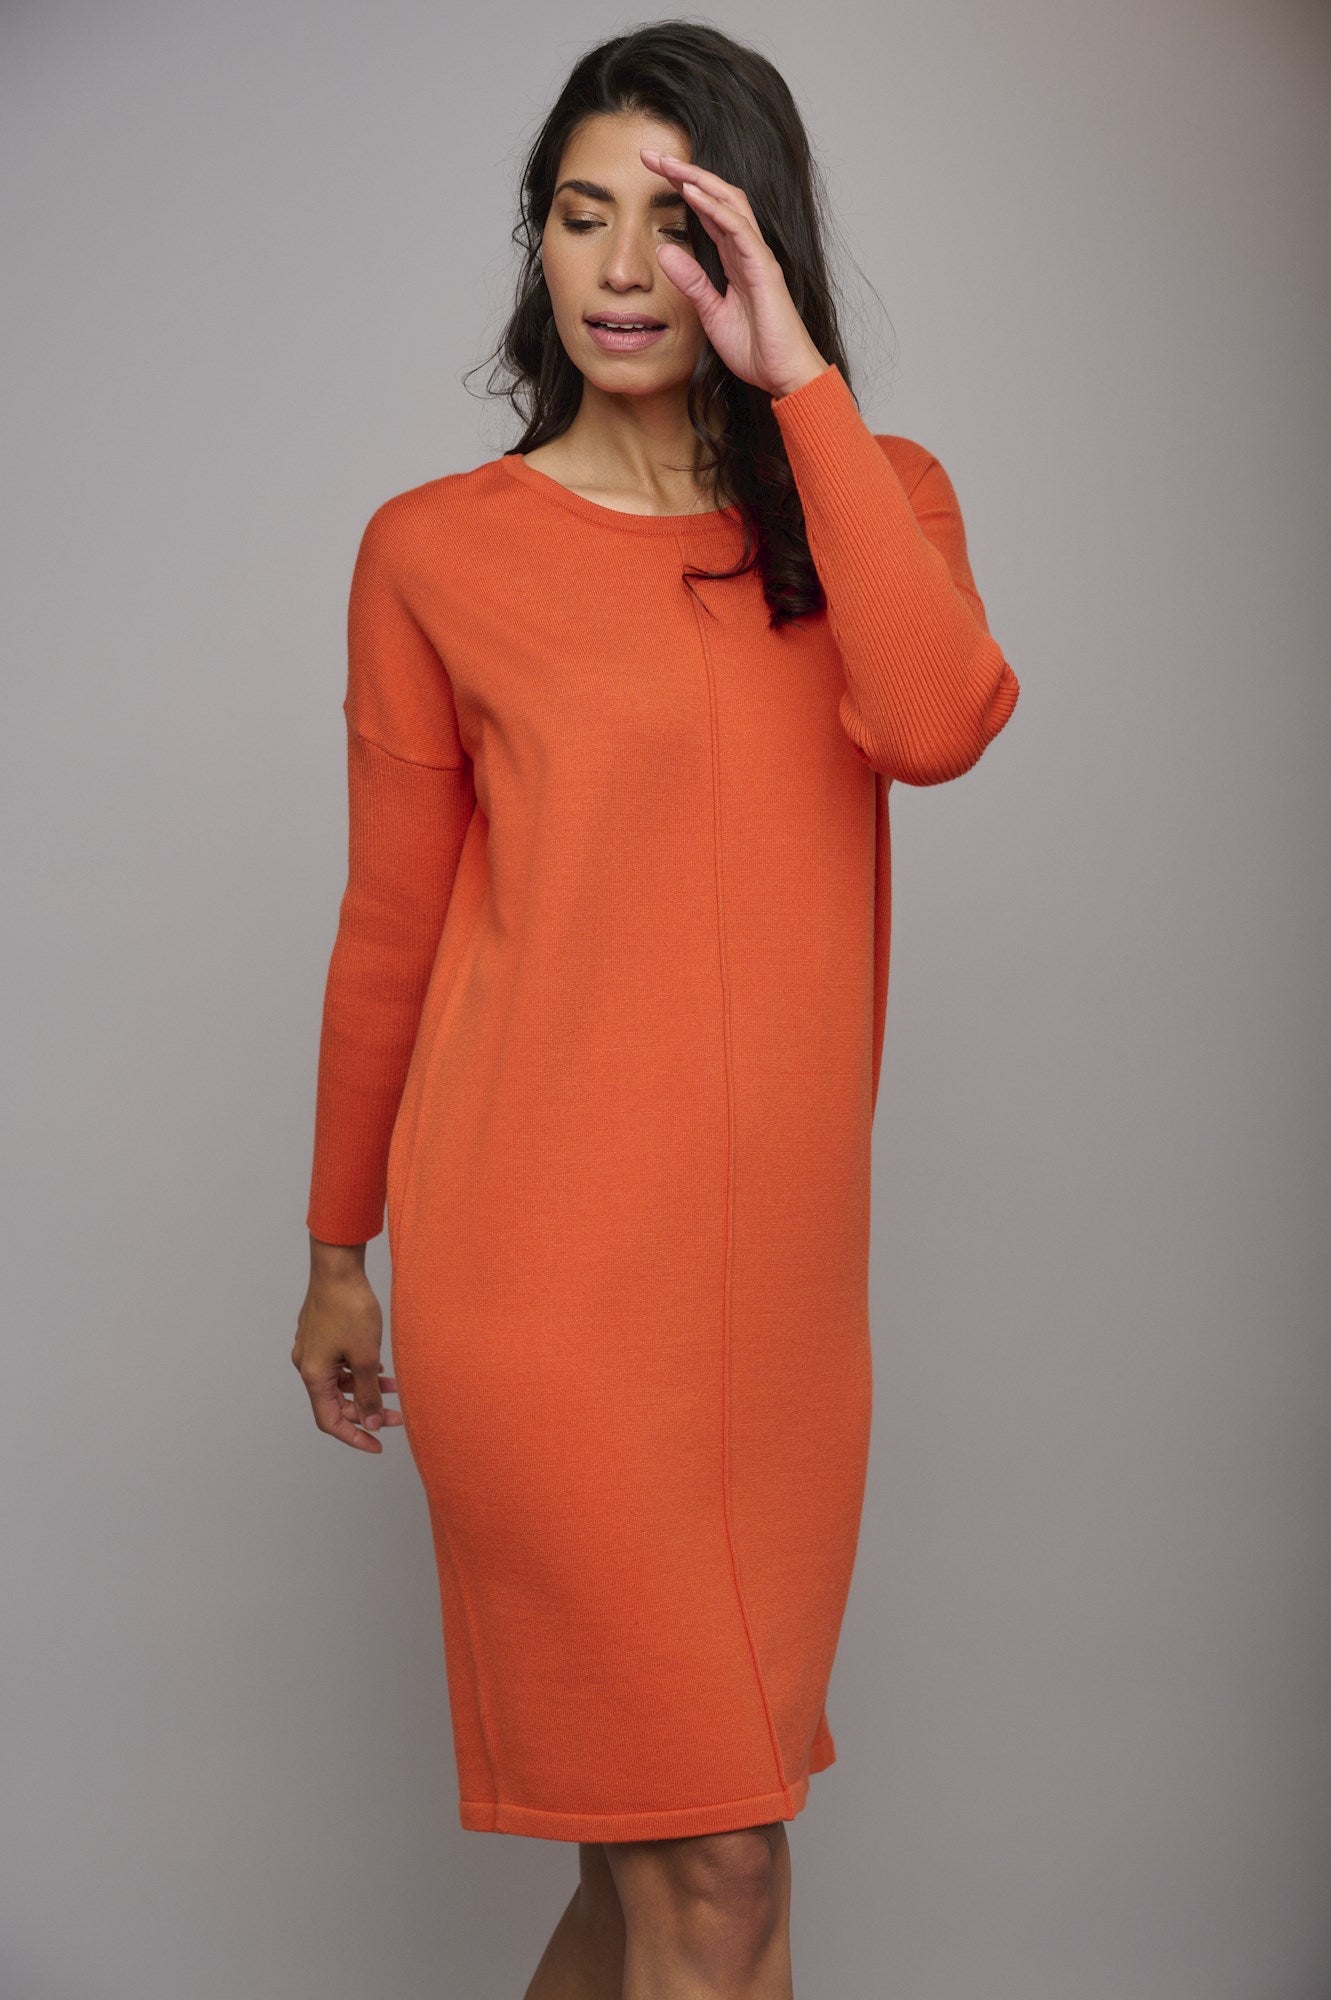 Rino & Pelle Orange Knitted Dress